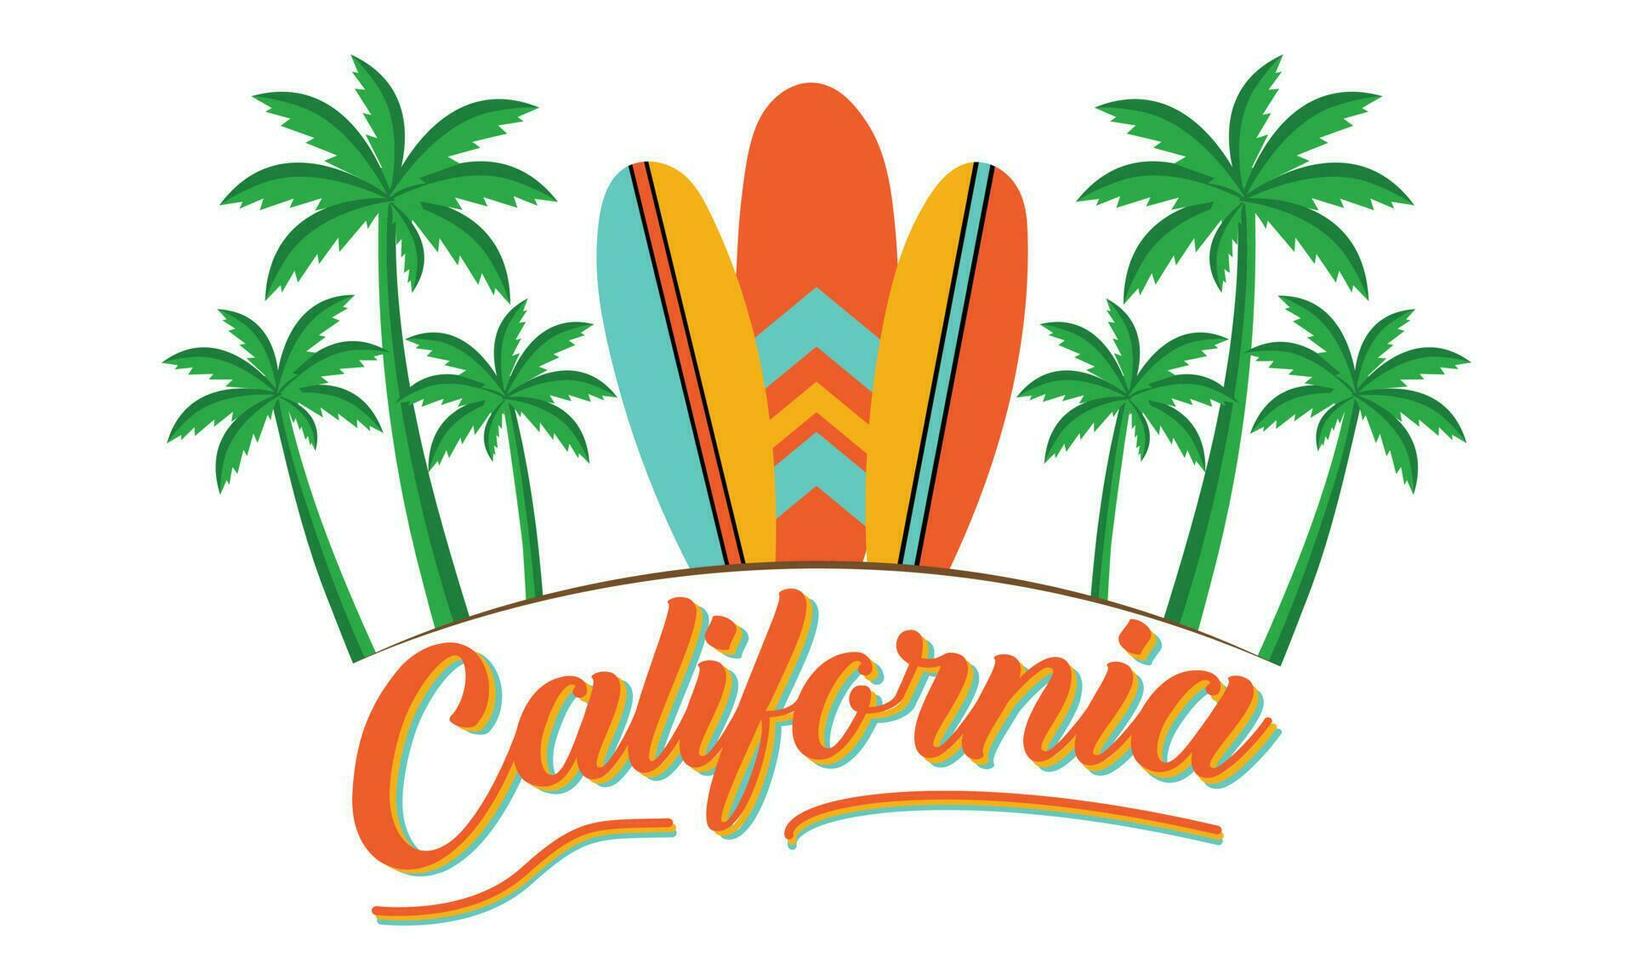 Kalifornien T-Shirt Design Vektor Illustration Surfen alle Tag, Slogan Text mit Palme Bäume und Surfen Bretter. zum T-Shirt druckt und andere Verwendet .Und bekleidung modisch Design mit Palme Bäume Silhouetten